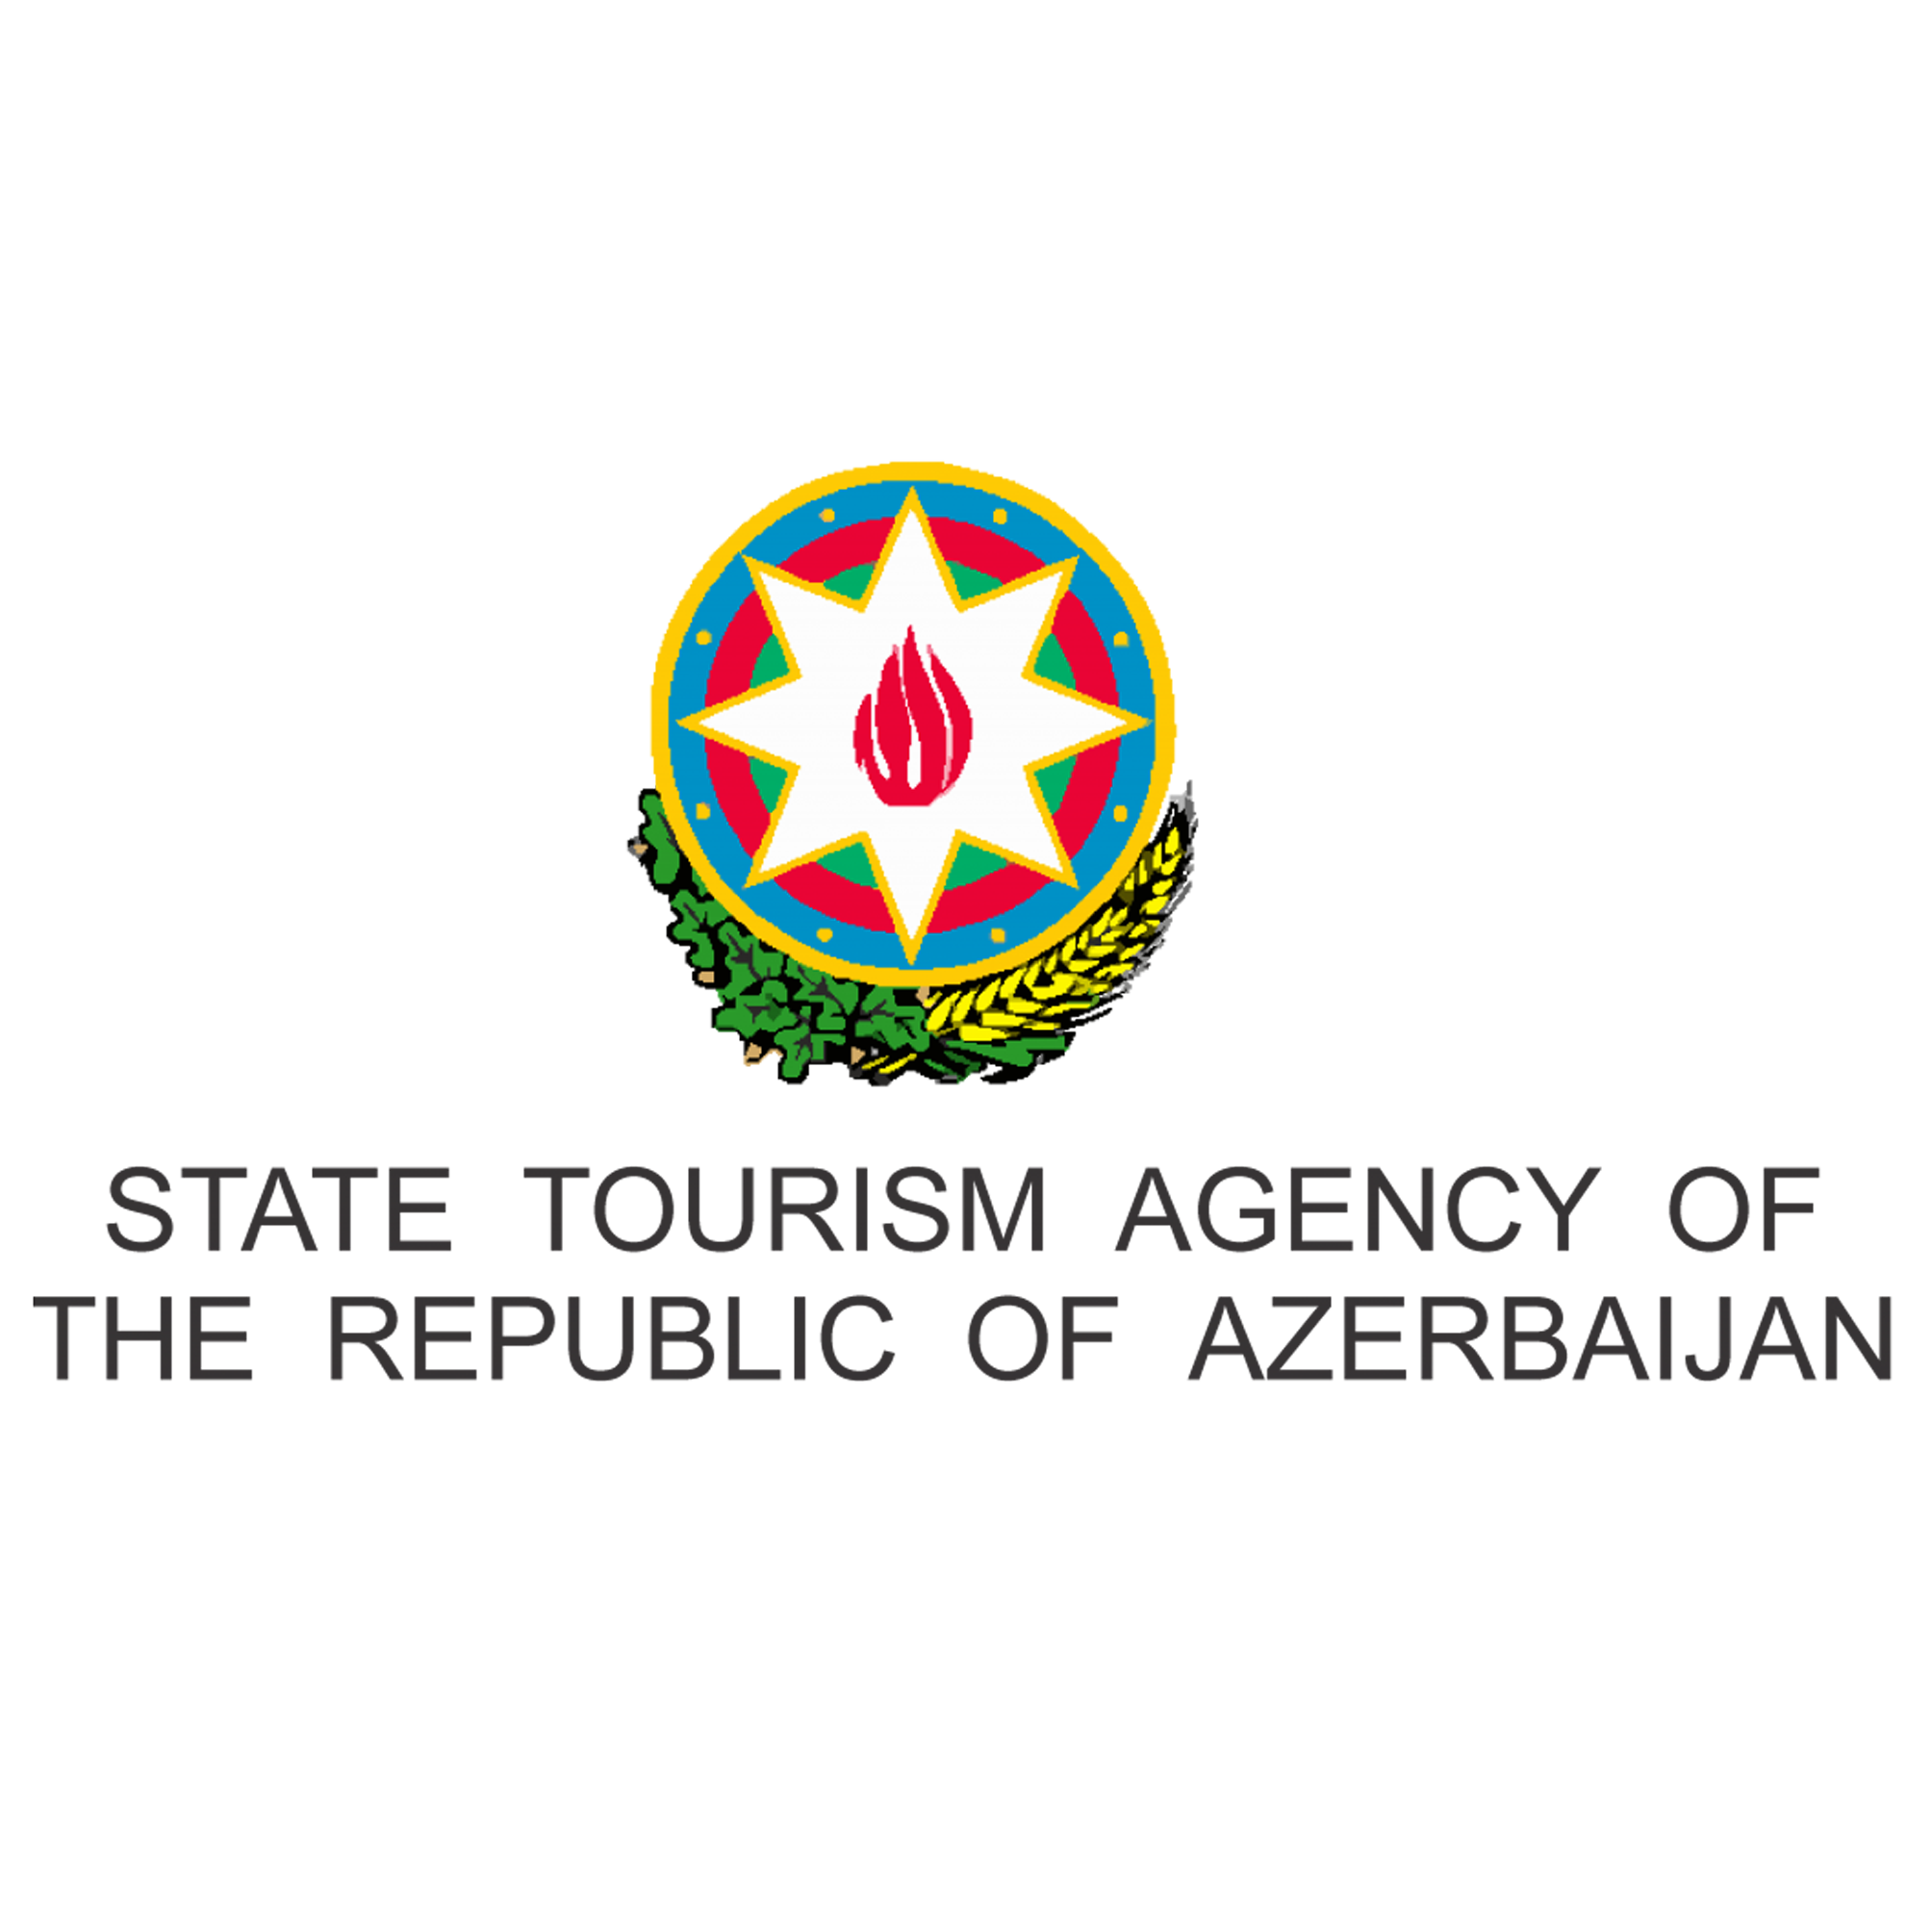 Azərbaycan Respublikasının Dövlət Turizm Agentliyi